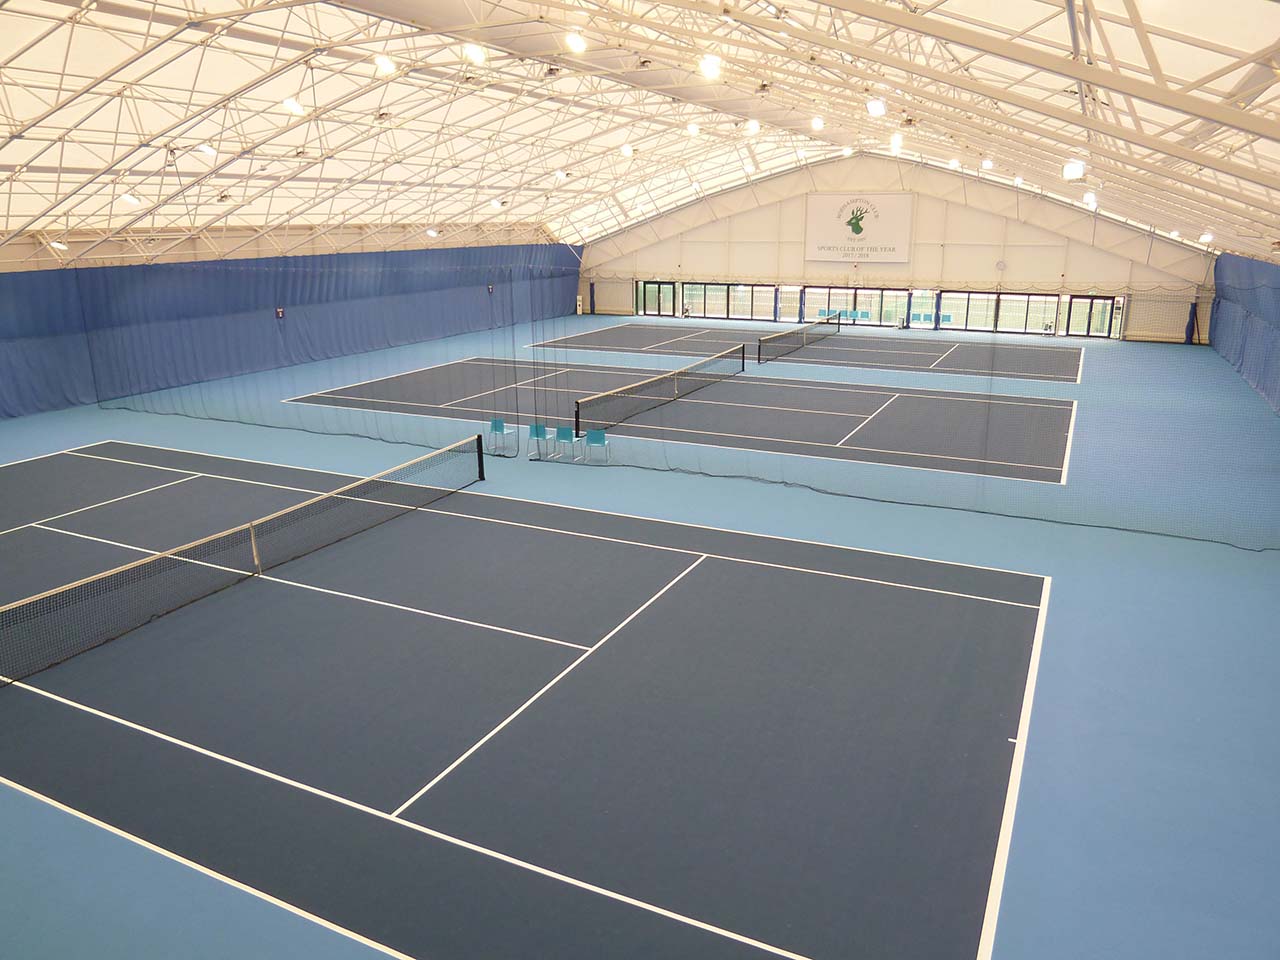 Roehampton Club - Indoor Tennis Centre